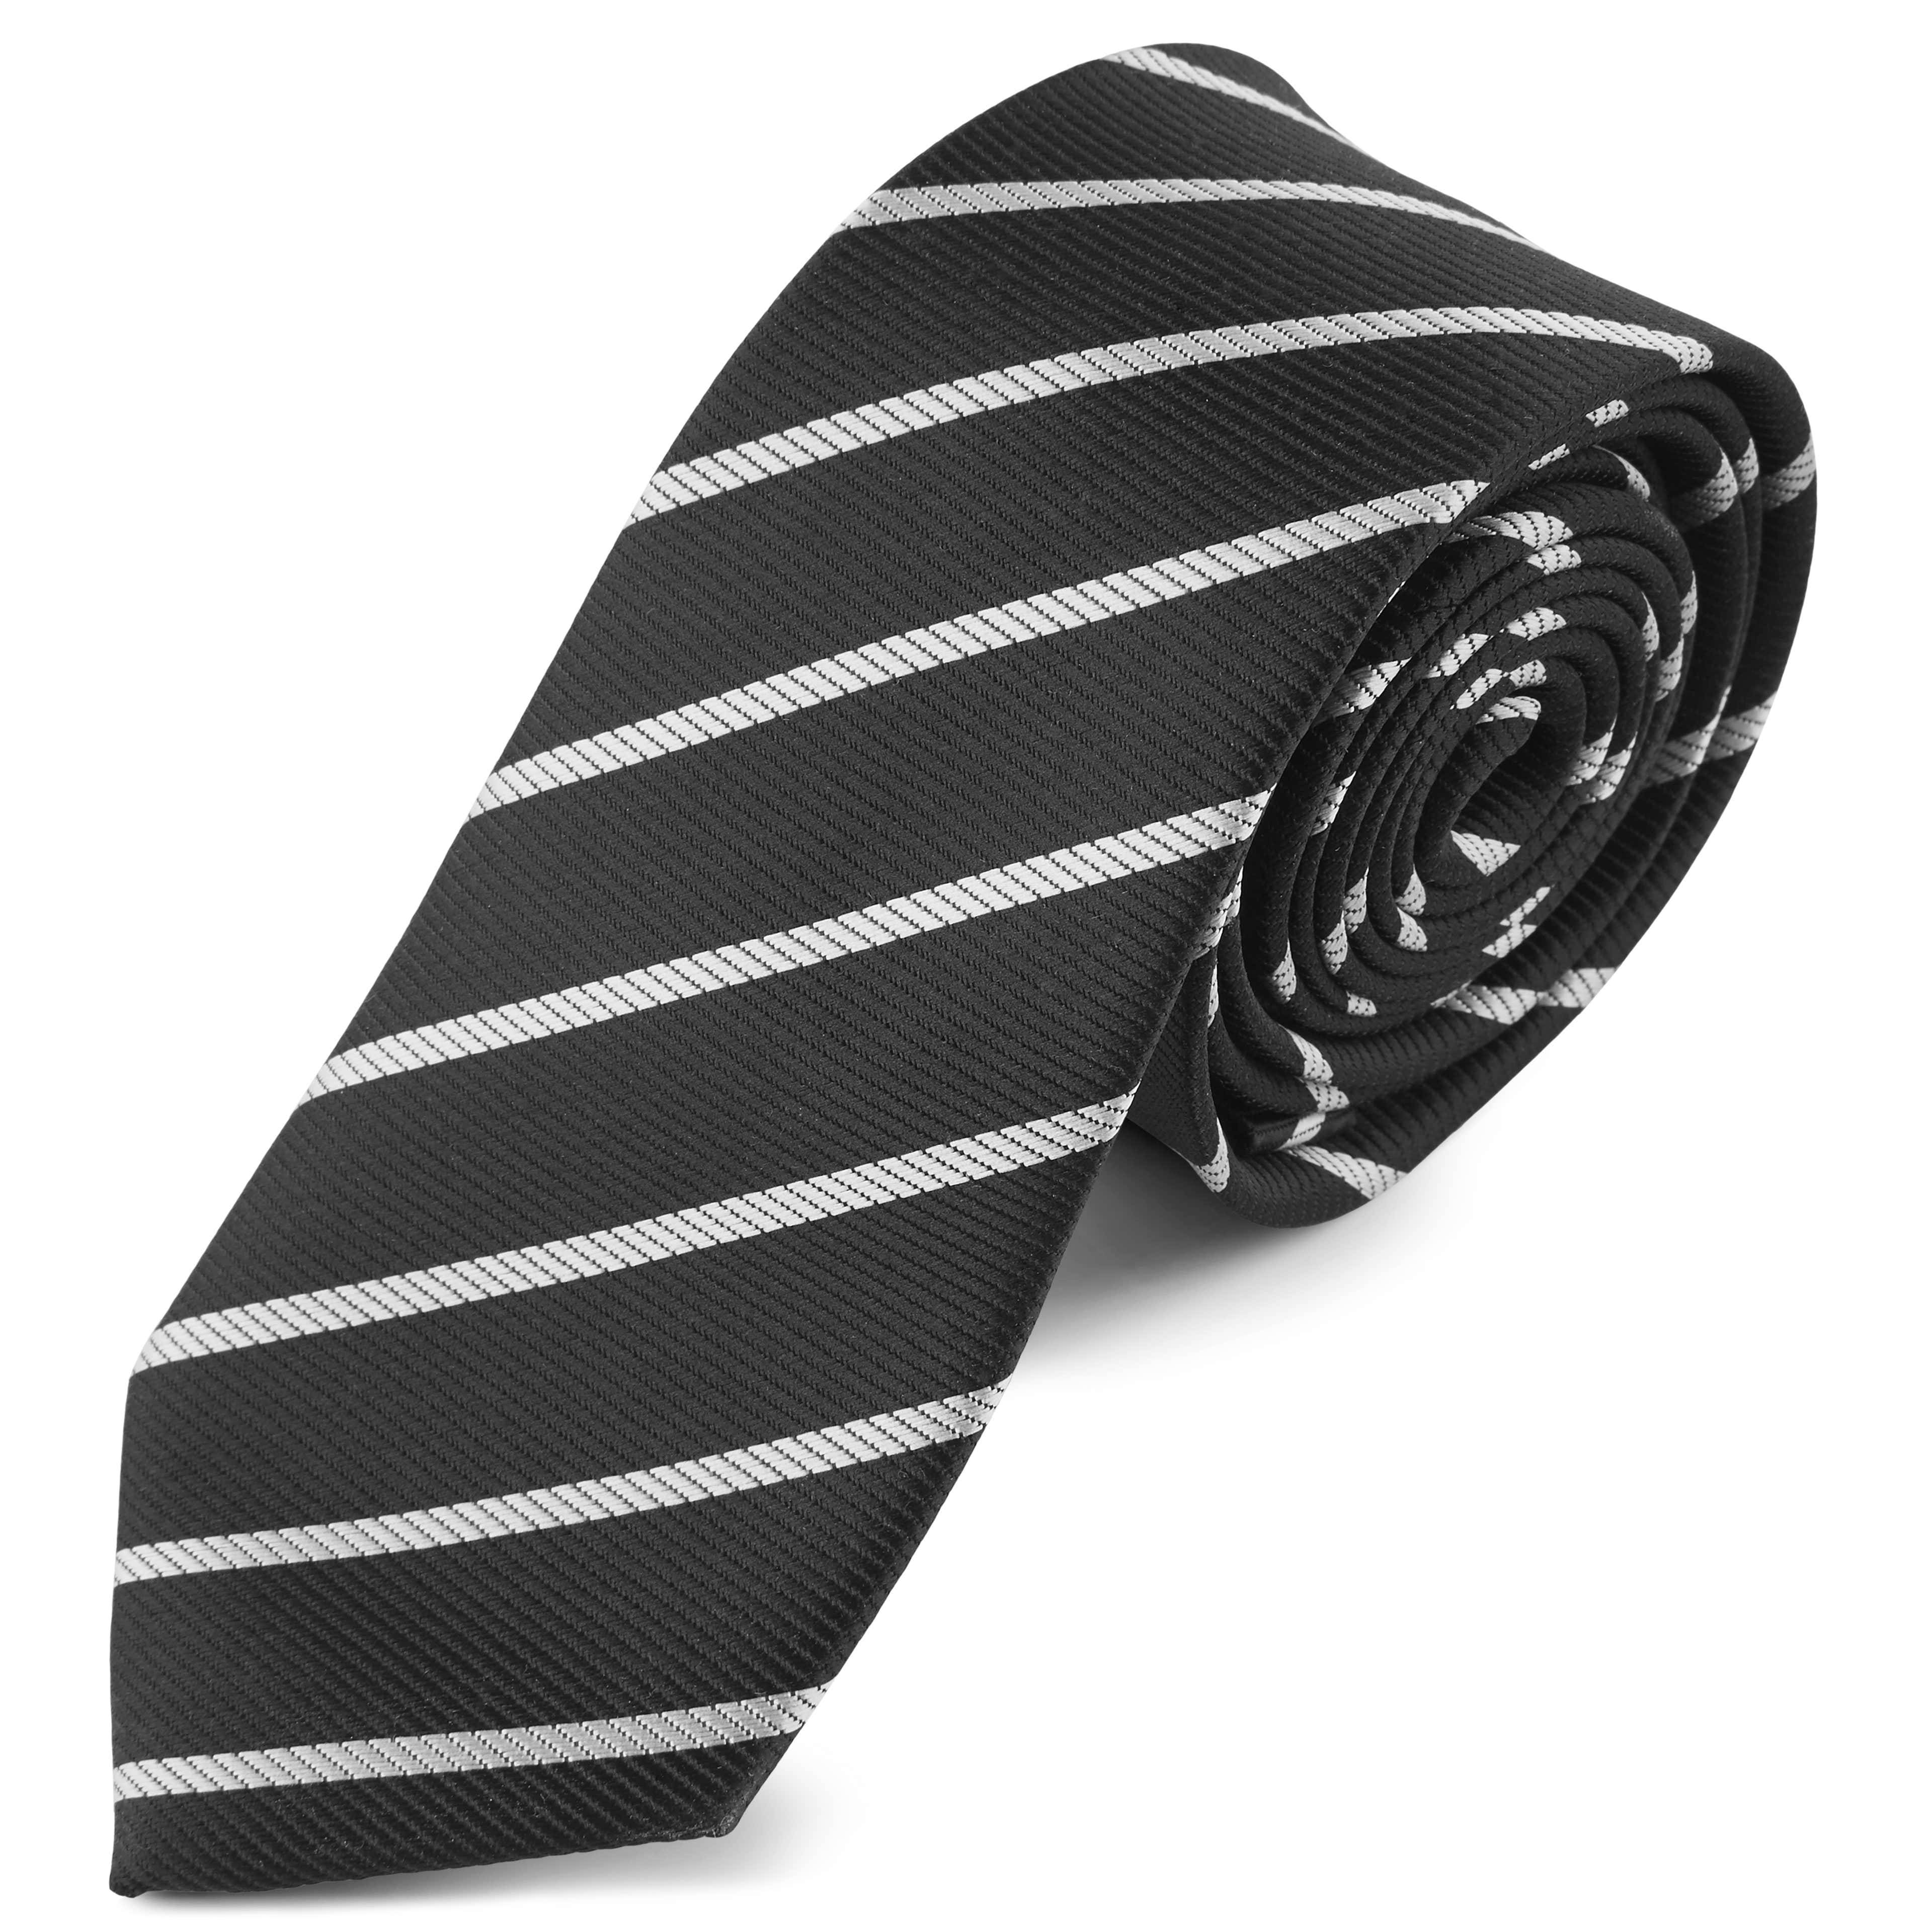 Cravată cu dungi albe și negre